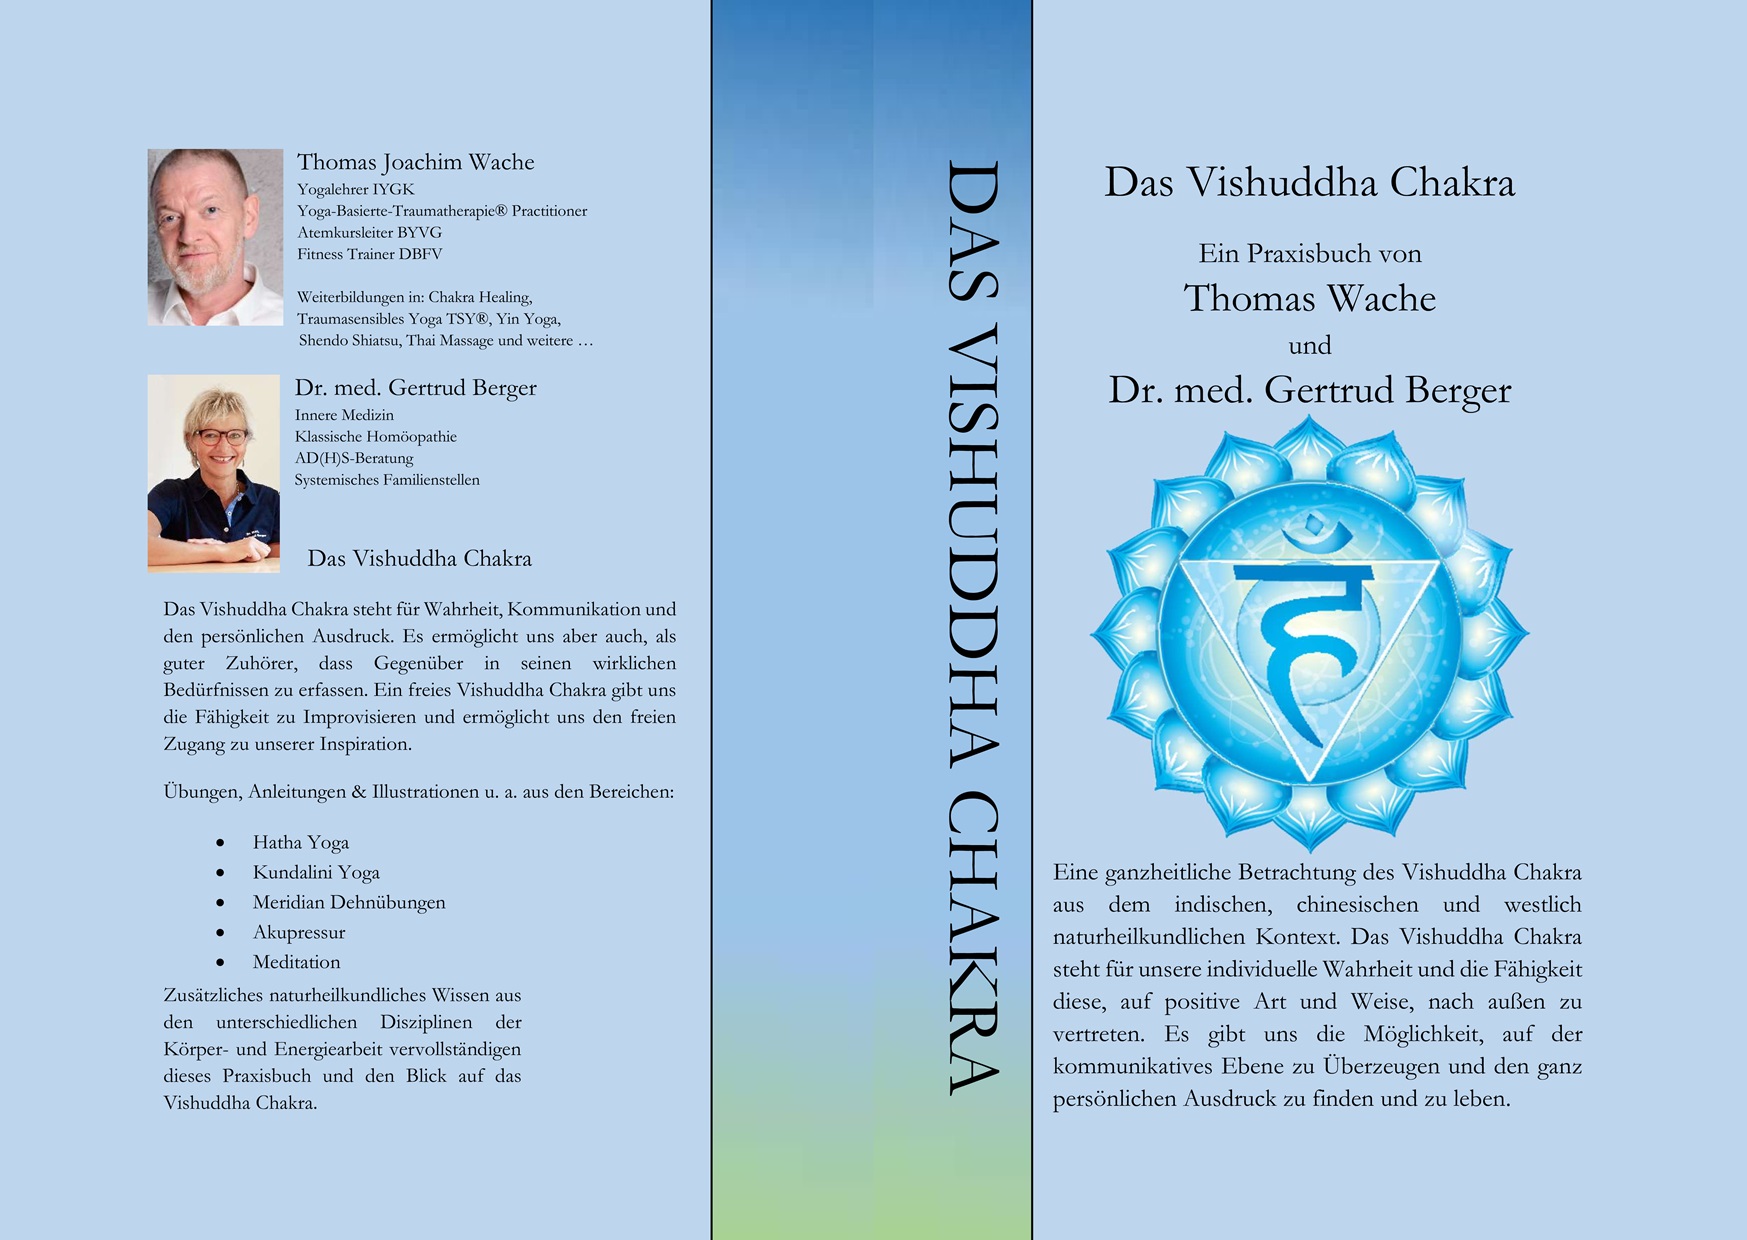 Das Vishuddha Chakra - Ein Praxisbuch von Thomas Wache und Dr. med. Gertrud Berger